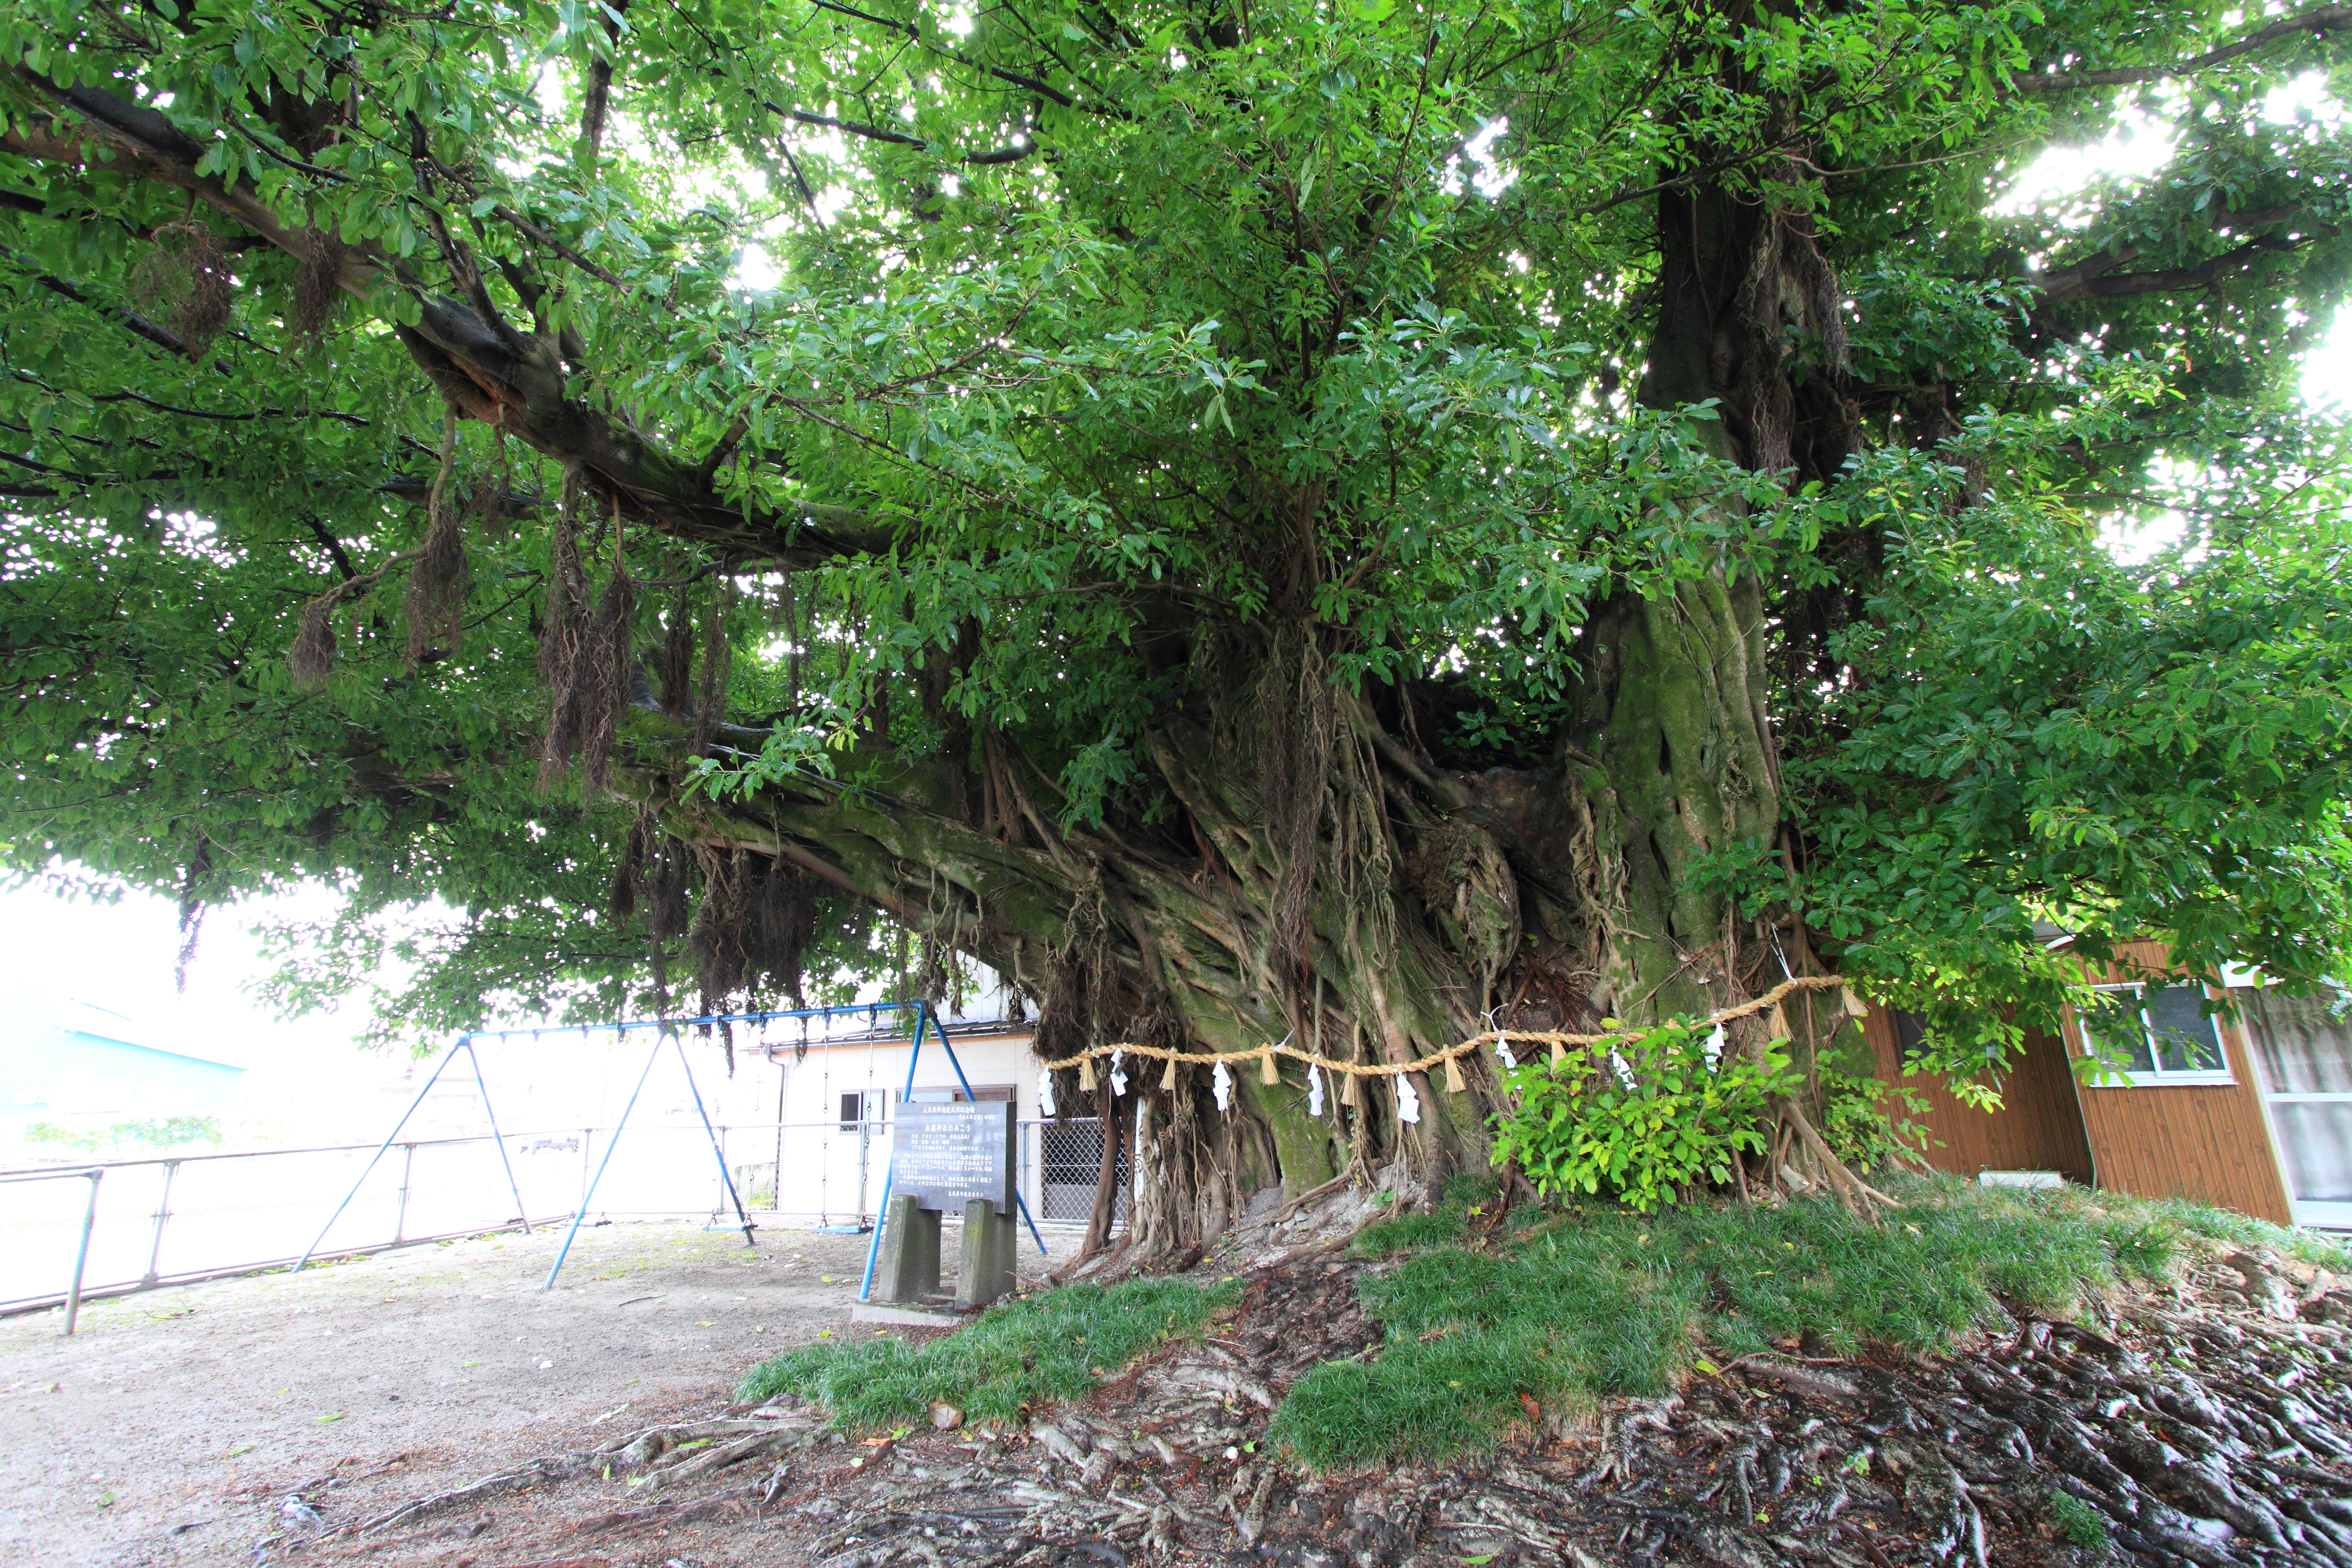 「永目神社のアコウの木【県指定文化財・天然記念物】」に関する1番目の画像です